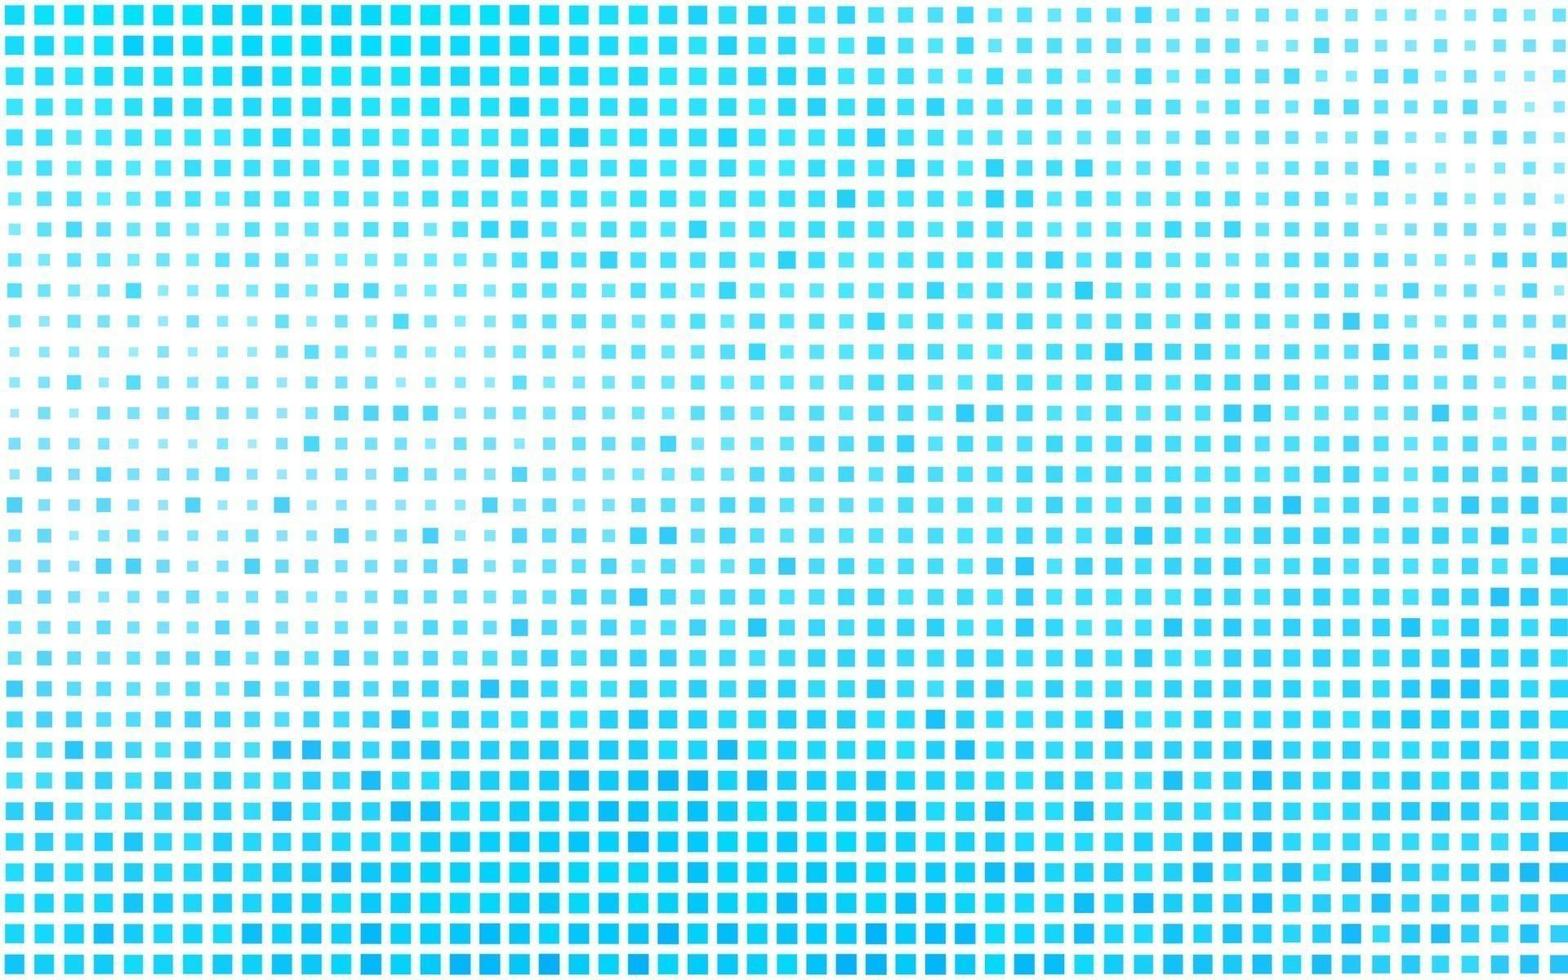 fond de vecteur bleu clair avec des rectangles, des carrés.